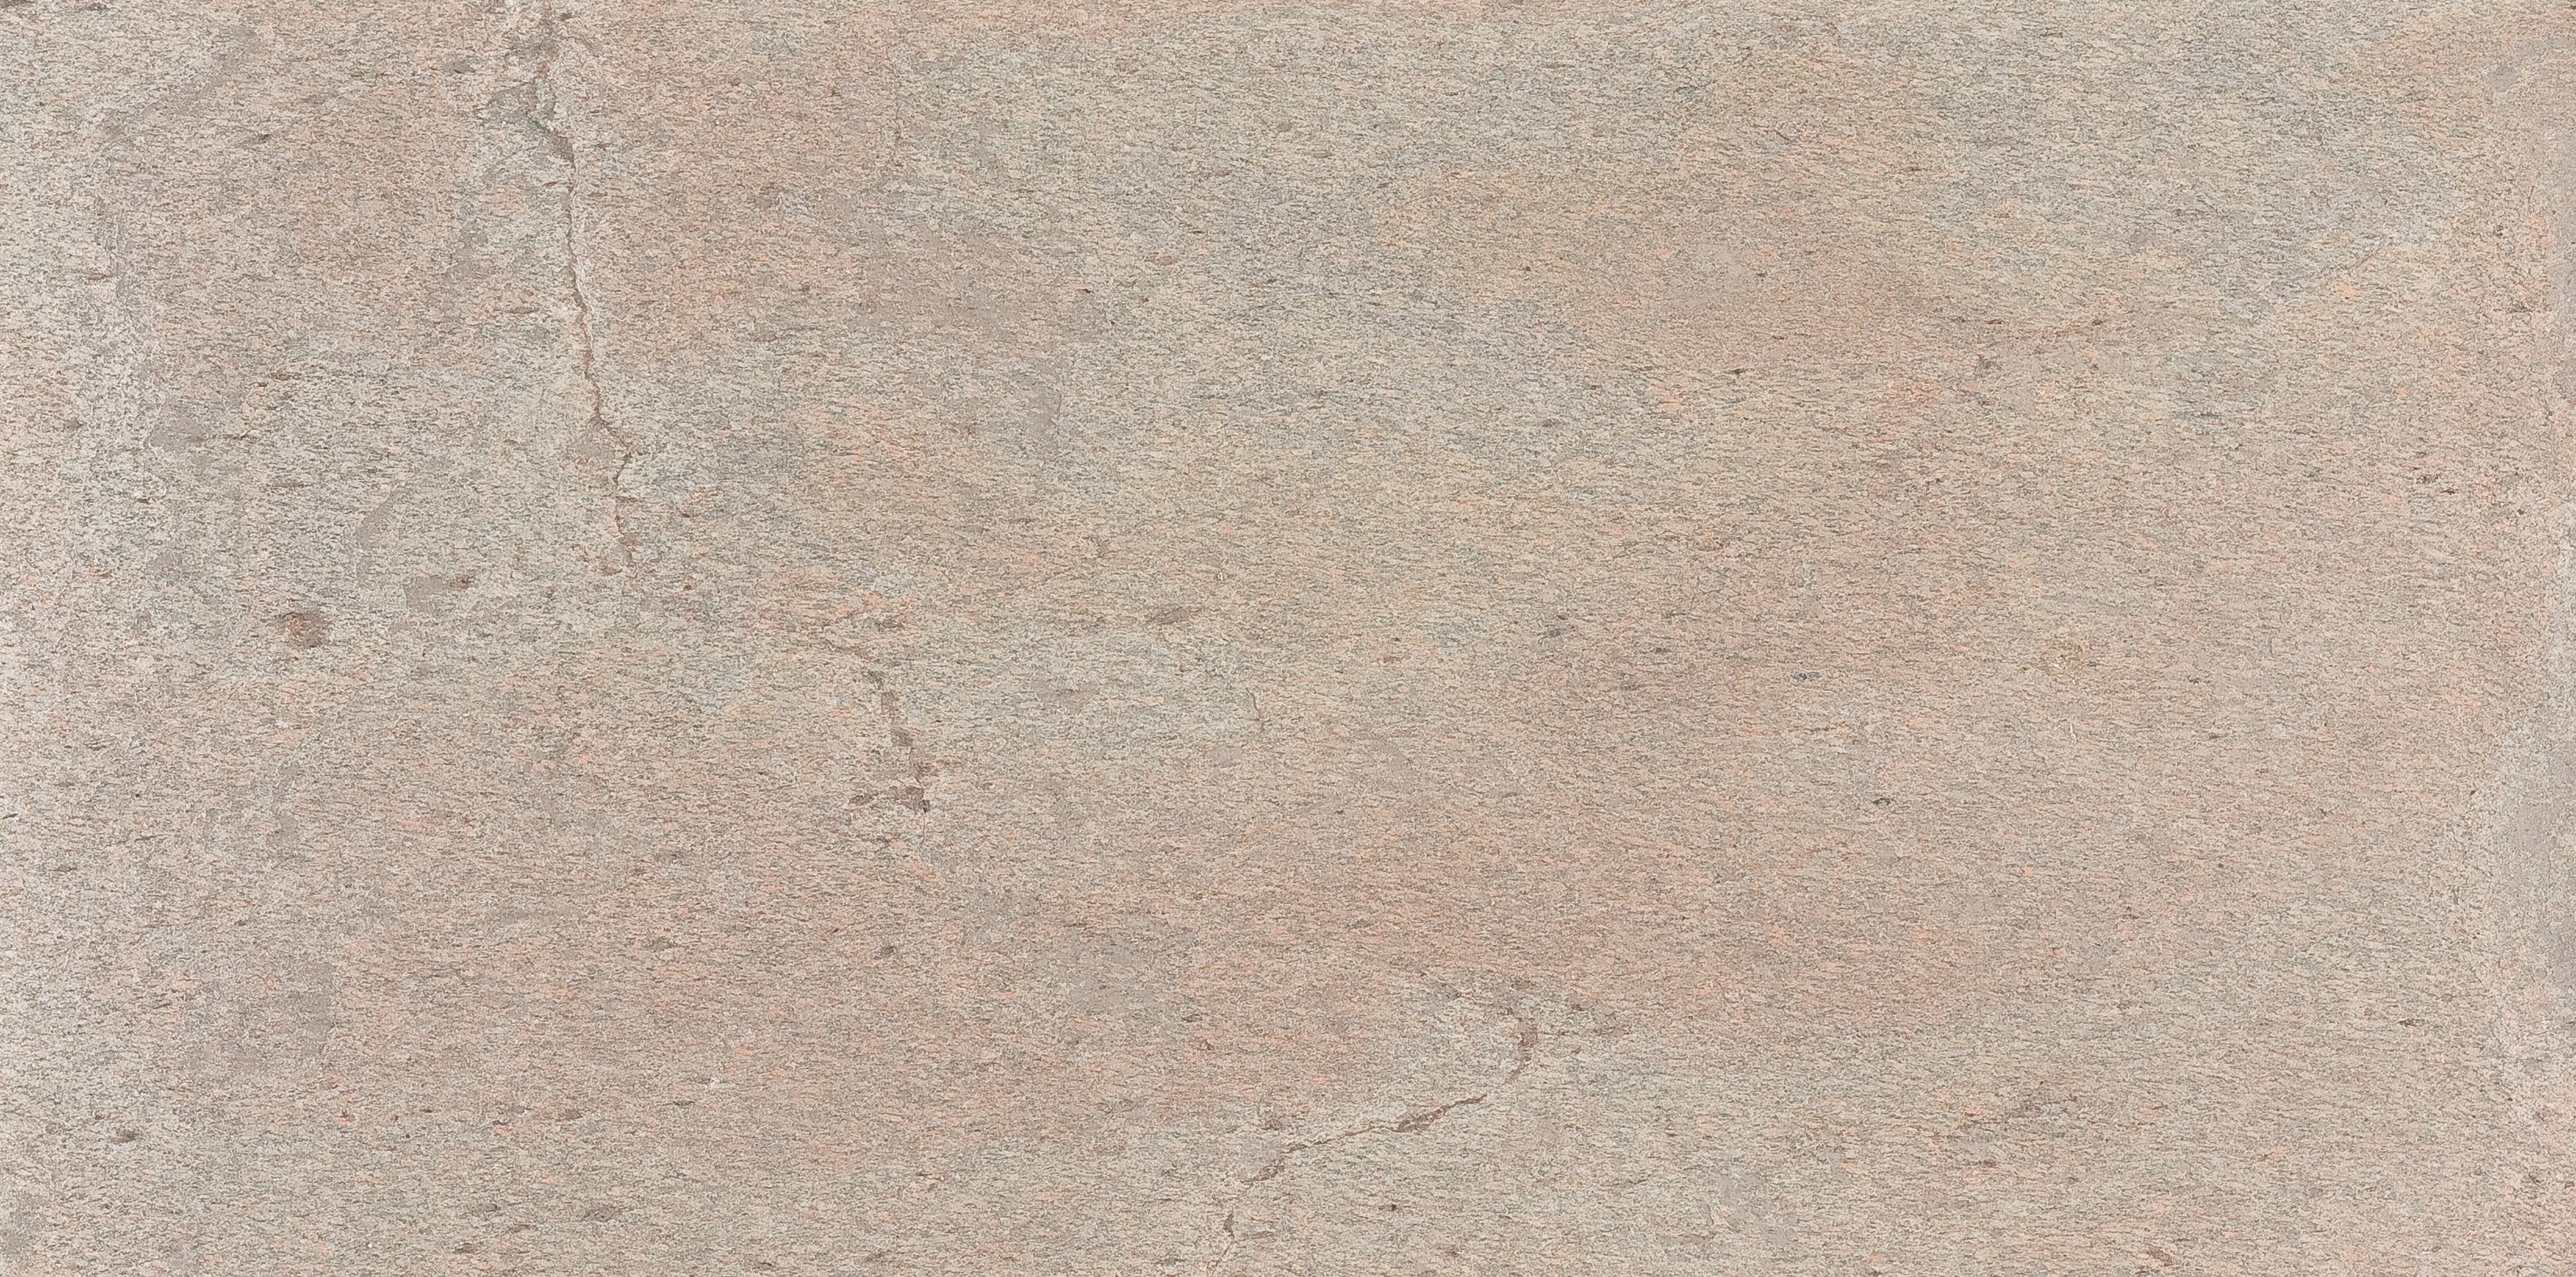 Slate Lite Wandpaneel Auro, BxL: 120x240 cm, 2,88 qm, (1-tlg) aus Echtstein | Wandpaneele